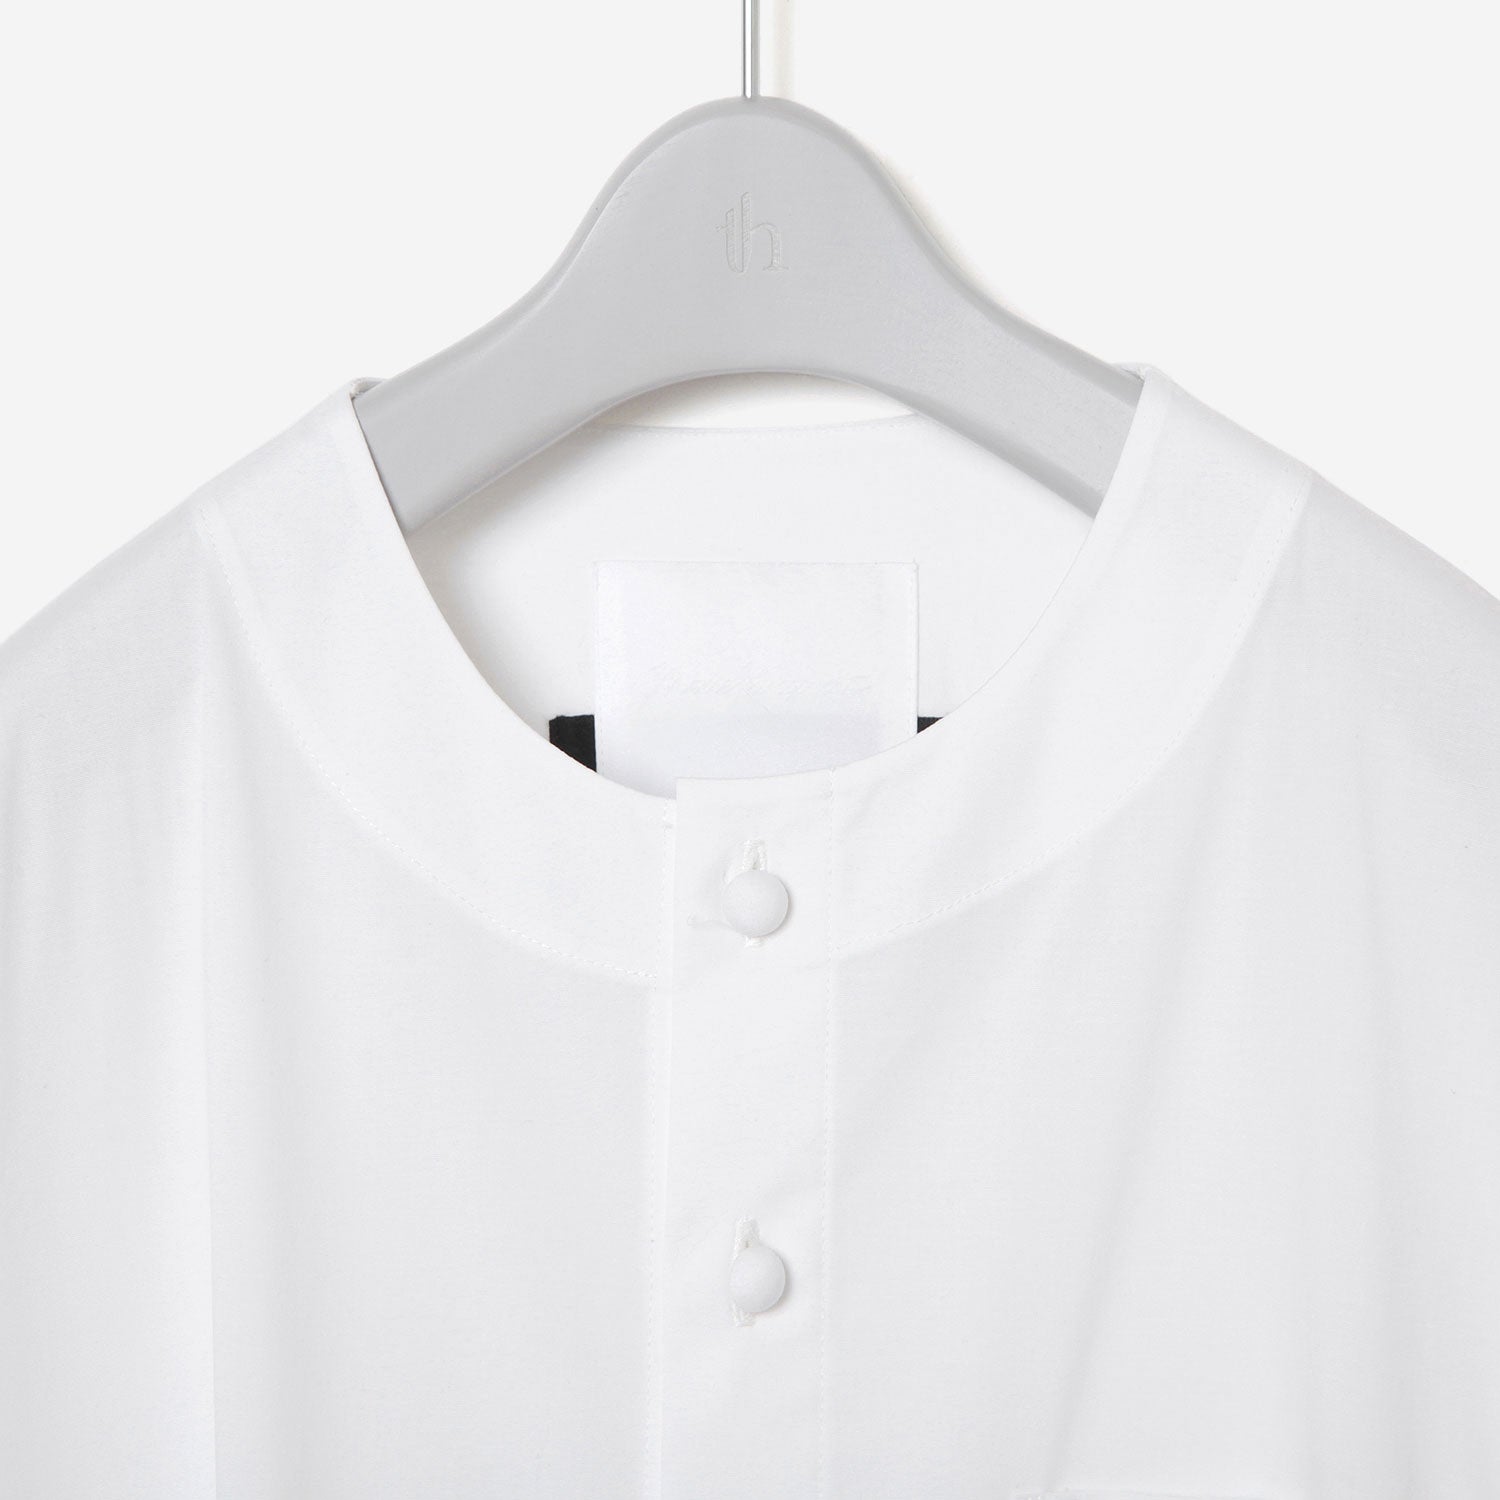 thmk Long Shirt / white